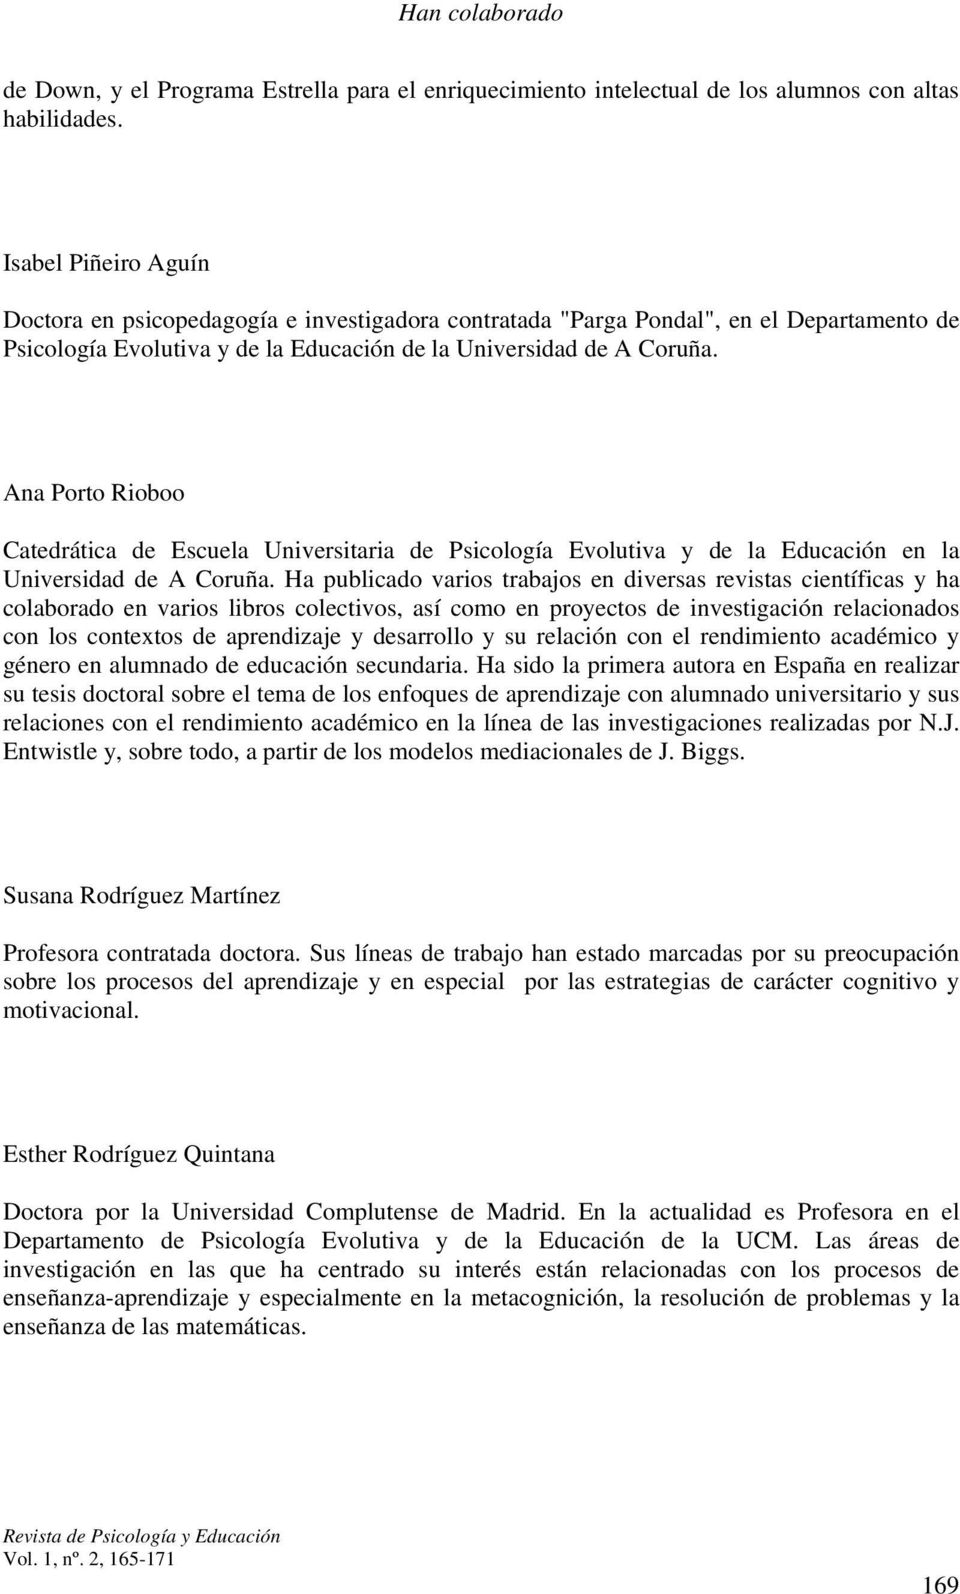 Ana Porto Rioboo Catedrática de Escuela Universitaria de Psicología Evolutiva y de la Educación en la Universidad de A Coruña.